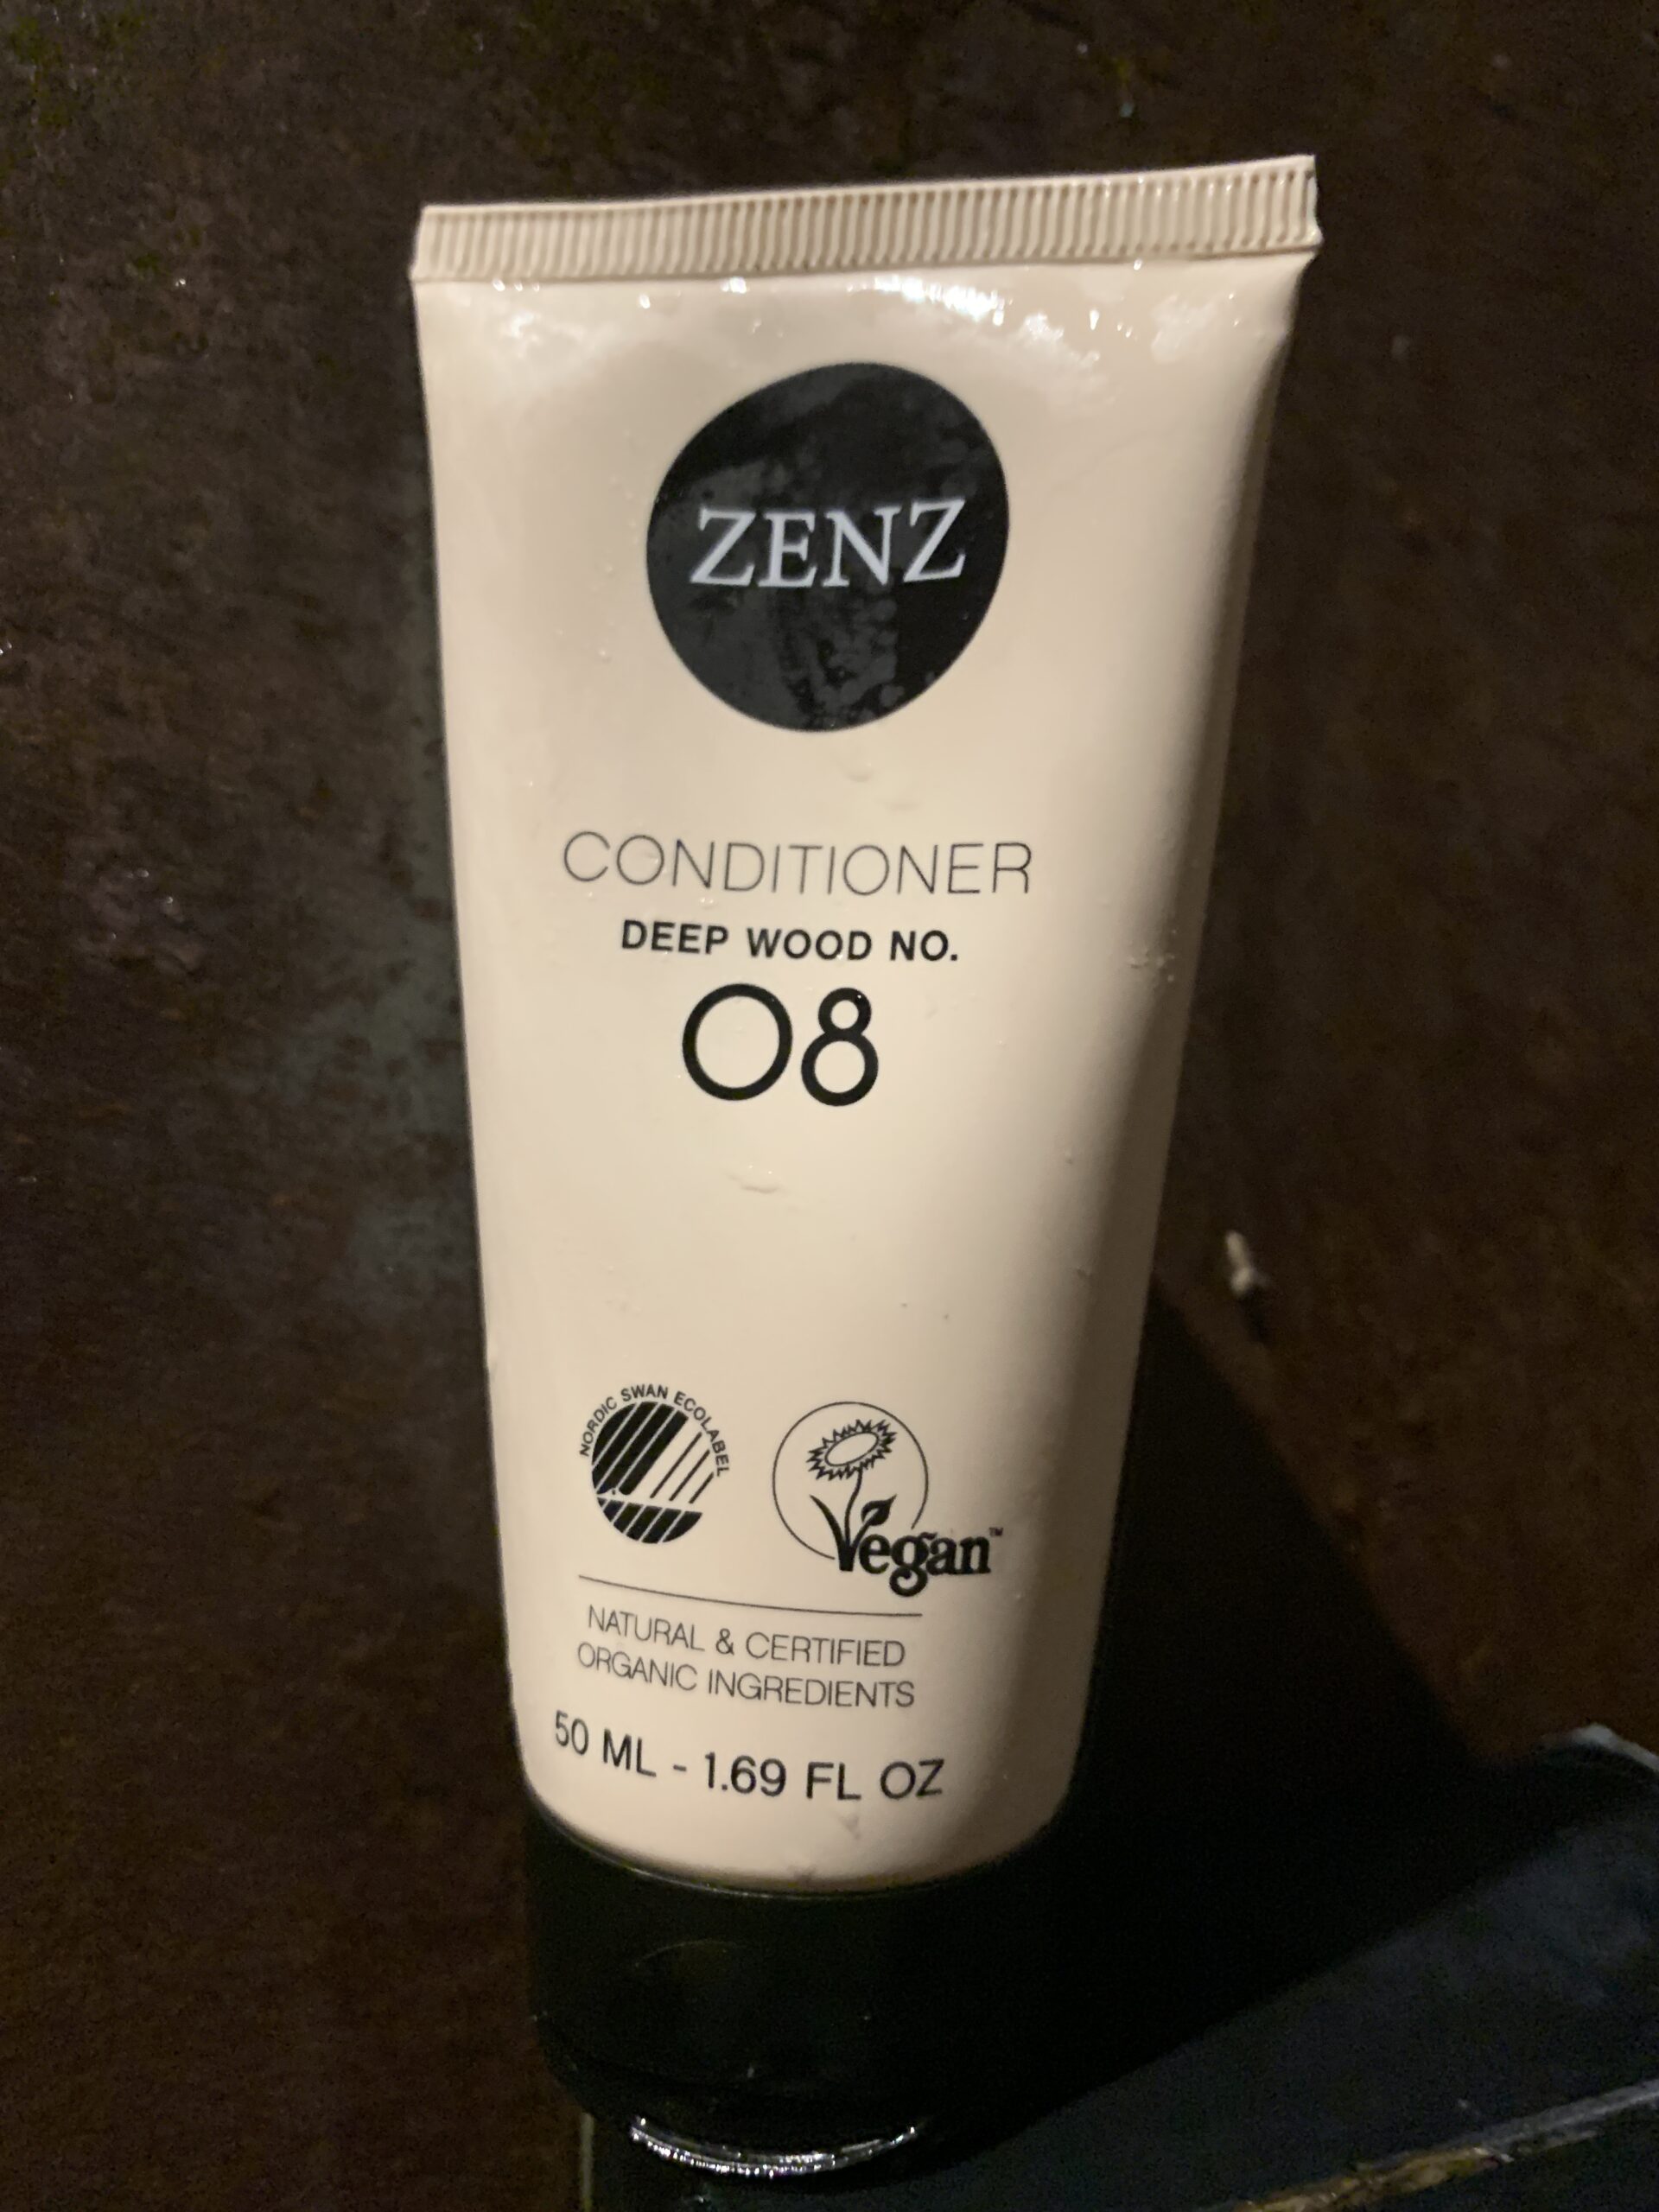 Zenz conditioner deep wood no 08